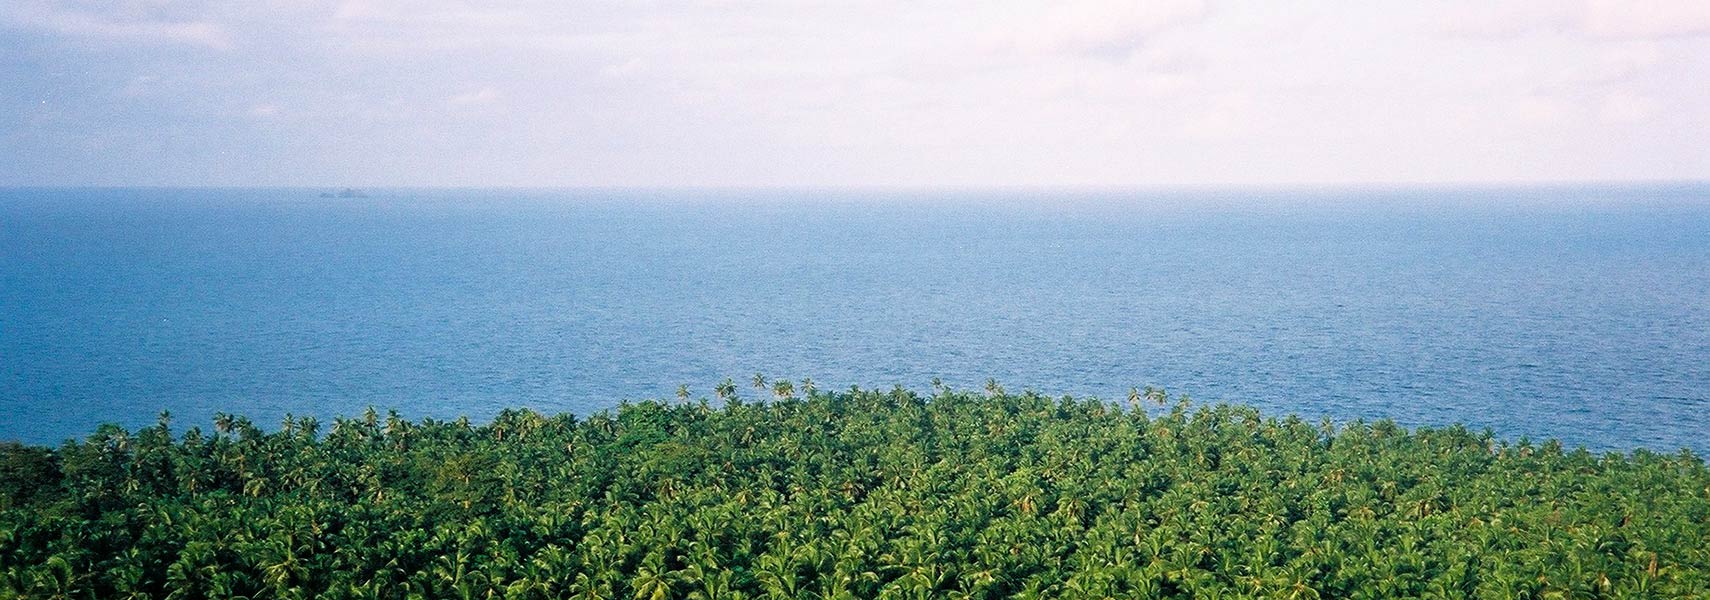 Ilheu das Rolas, São Tomé and Principe